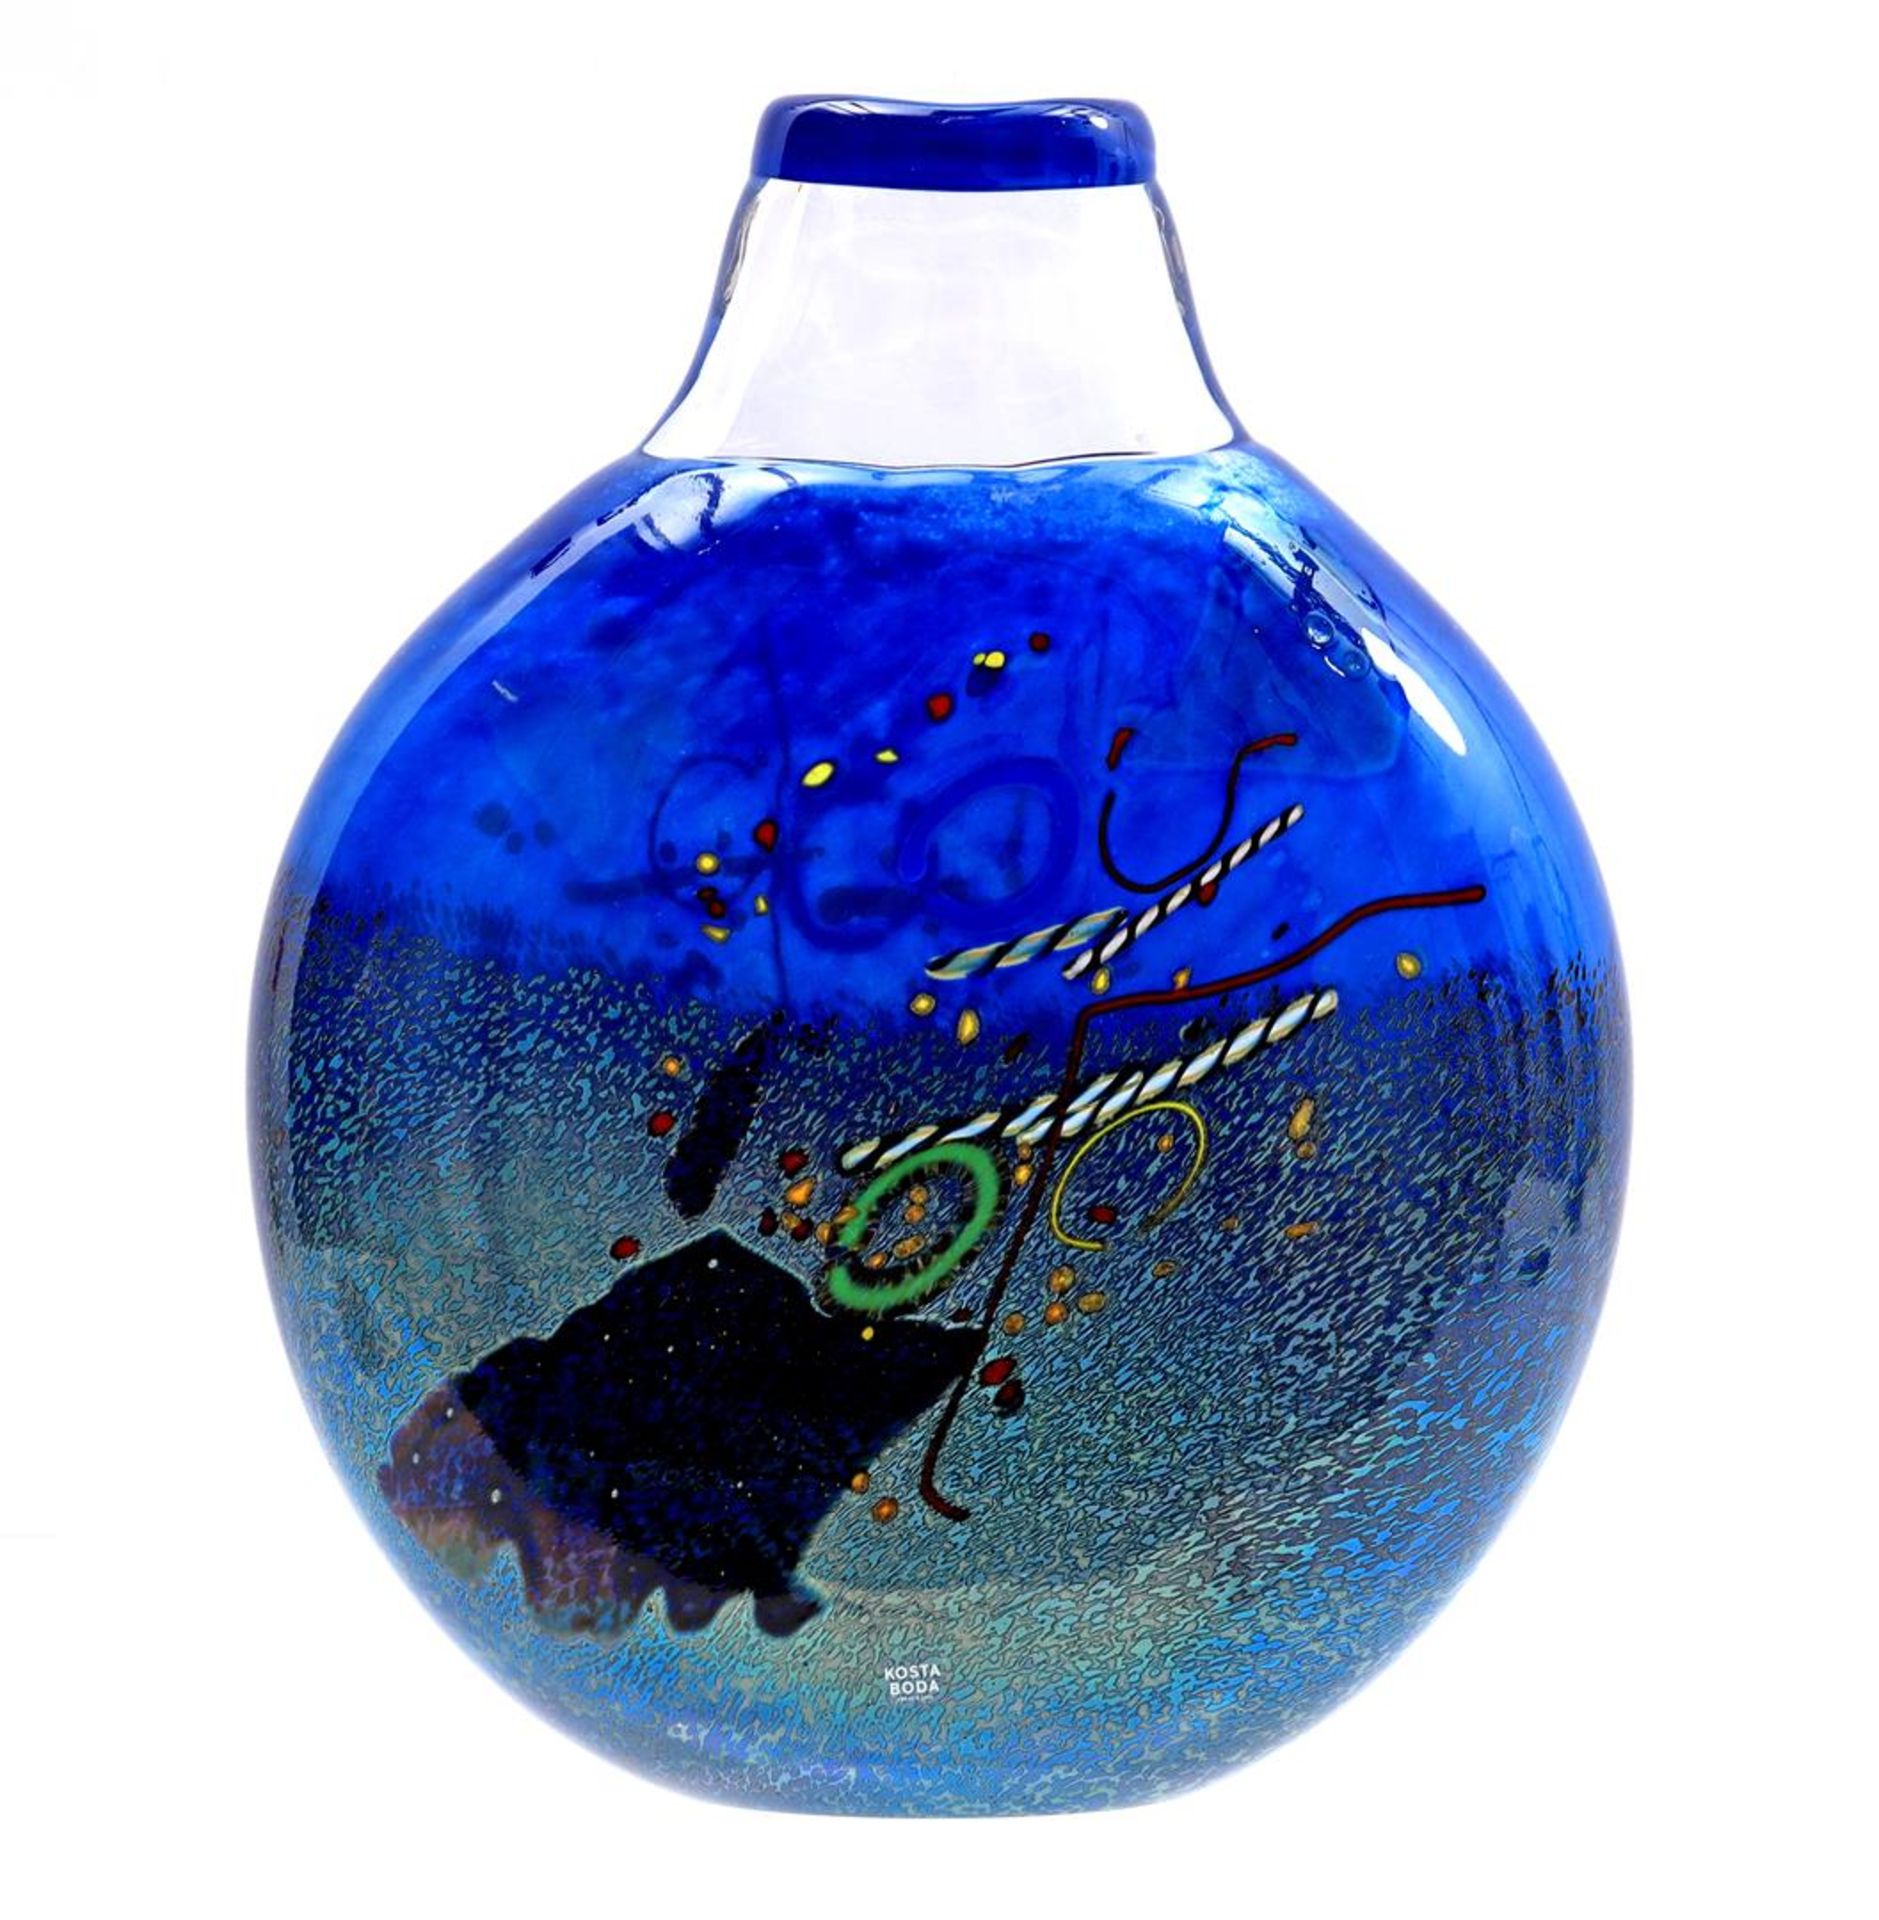 Kosta Boda glass decorative object